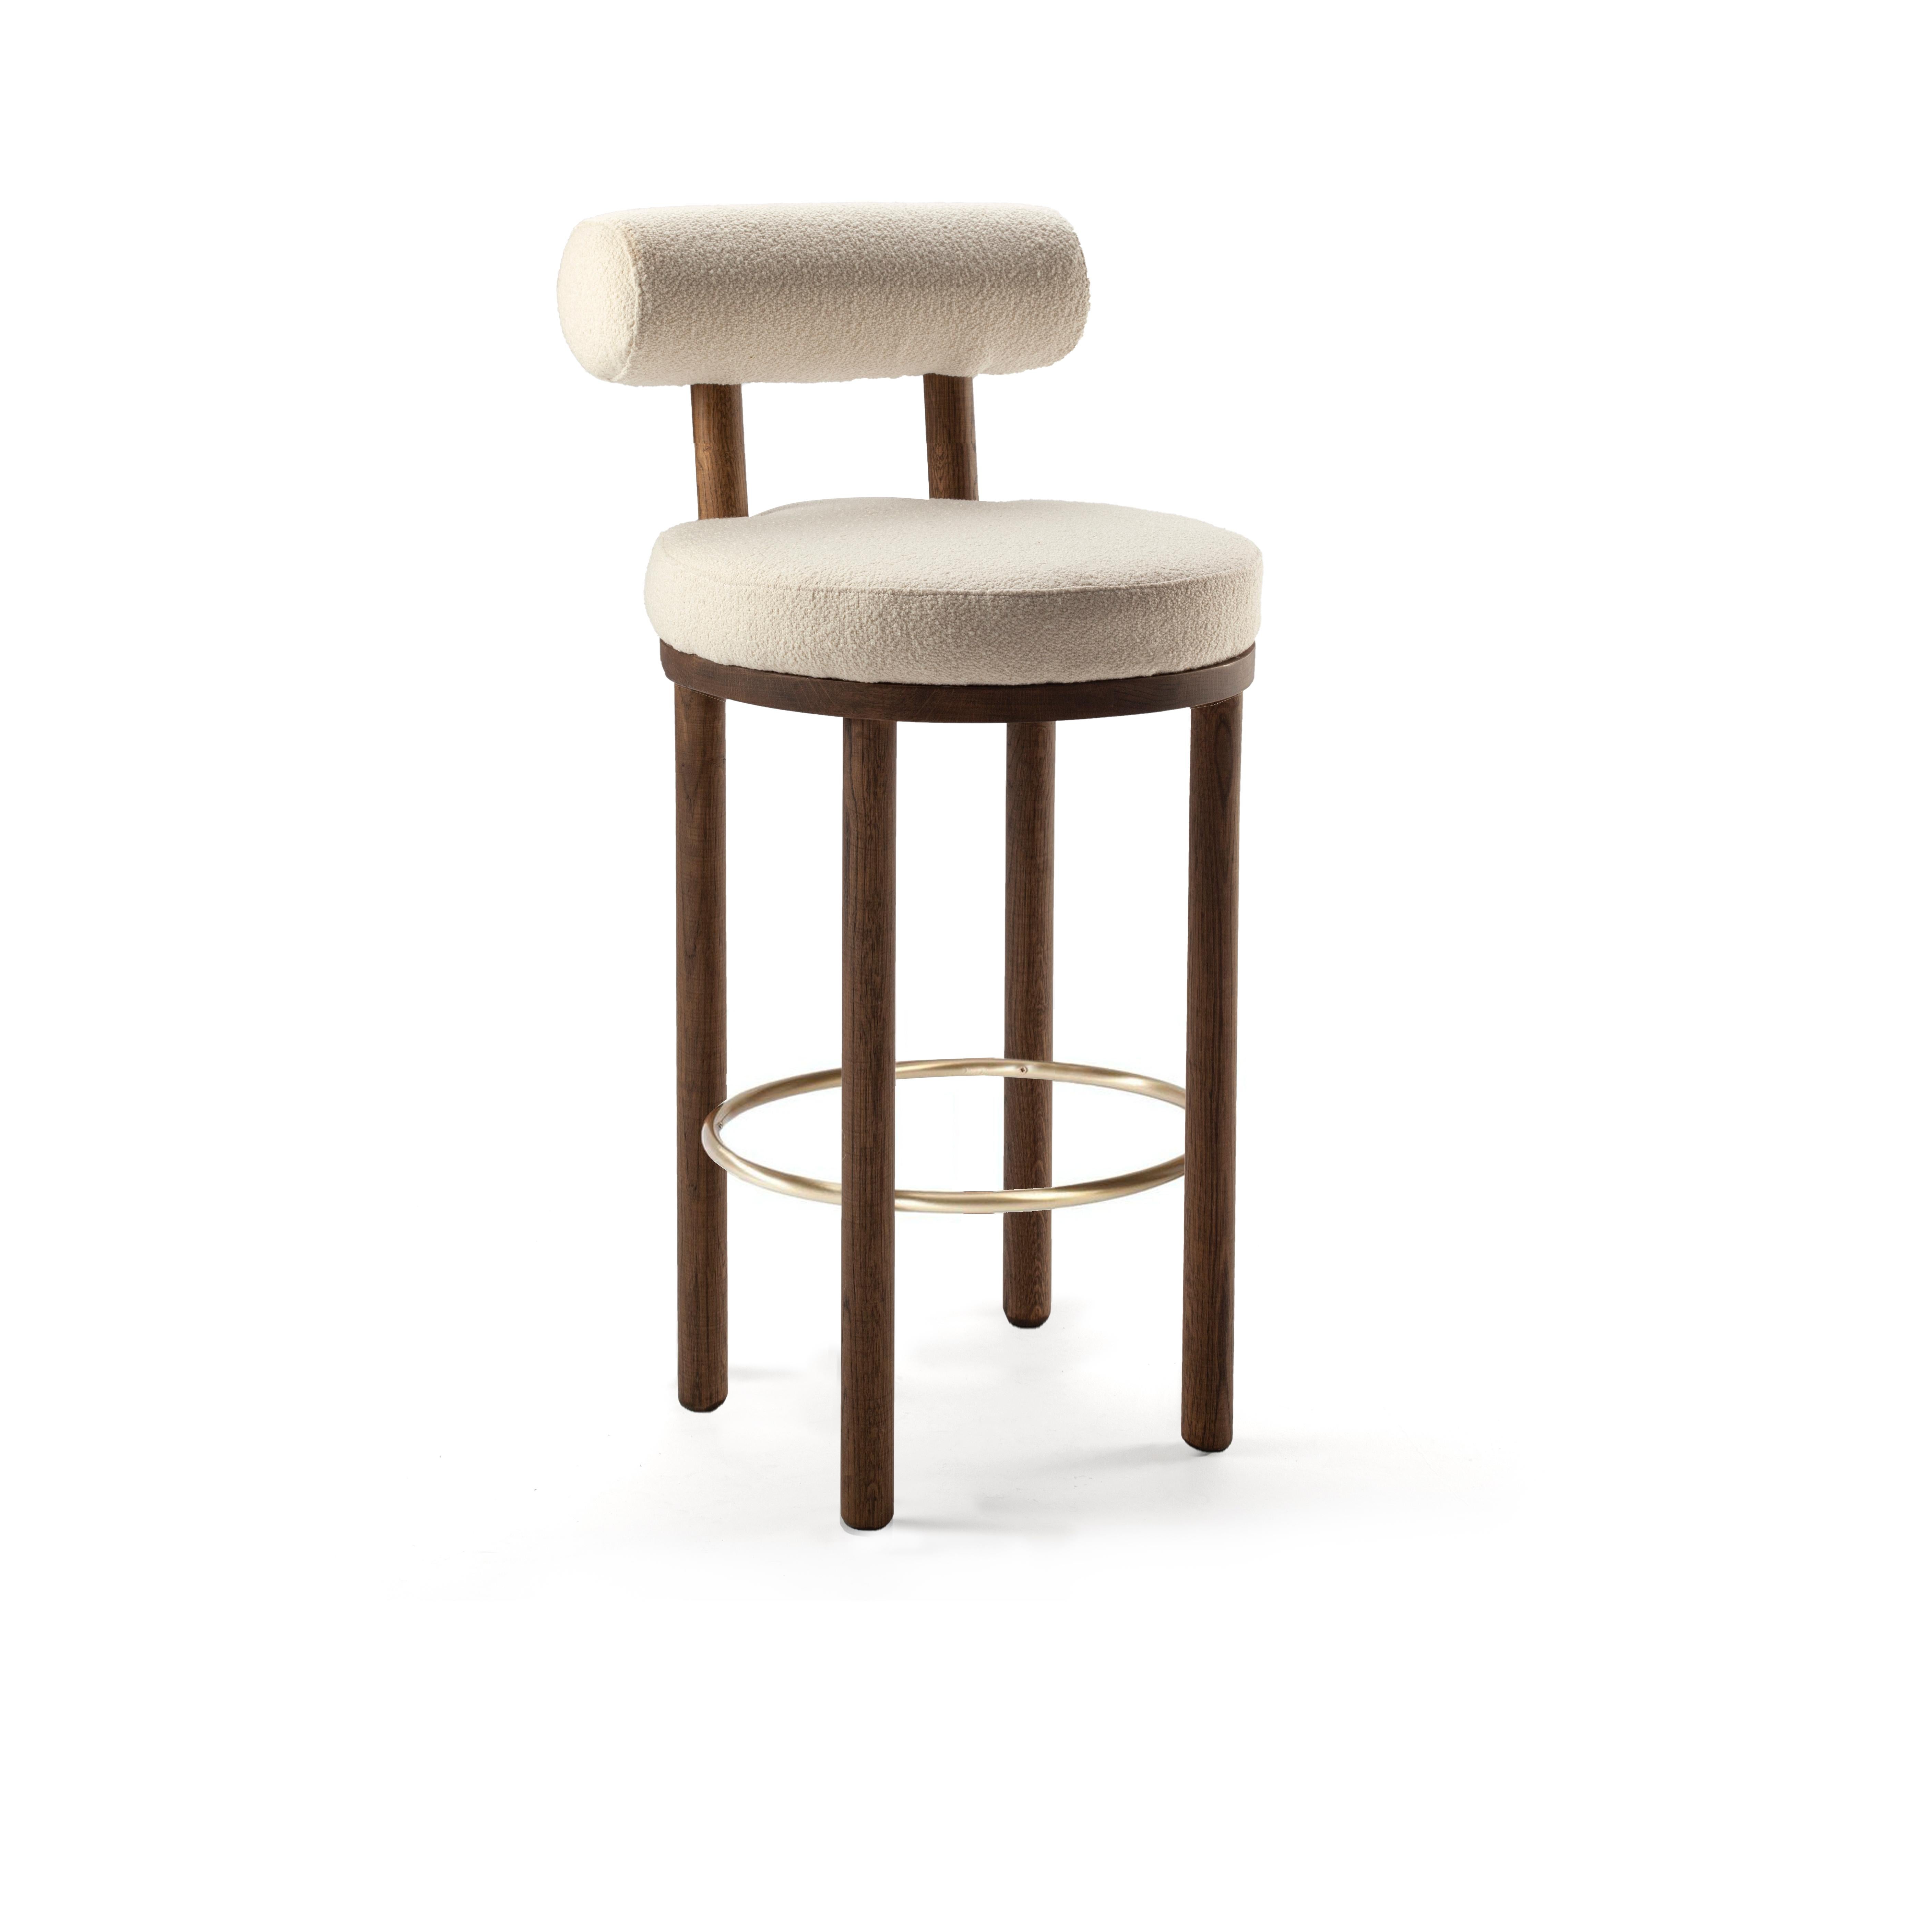 Une chaise qui allie les approches modernes et classiques du design.
Conçue pour épouser le corps, cette chaise durable et solide présente une structure de corps produite en bois massif.